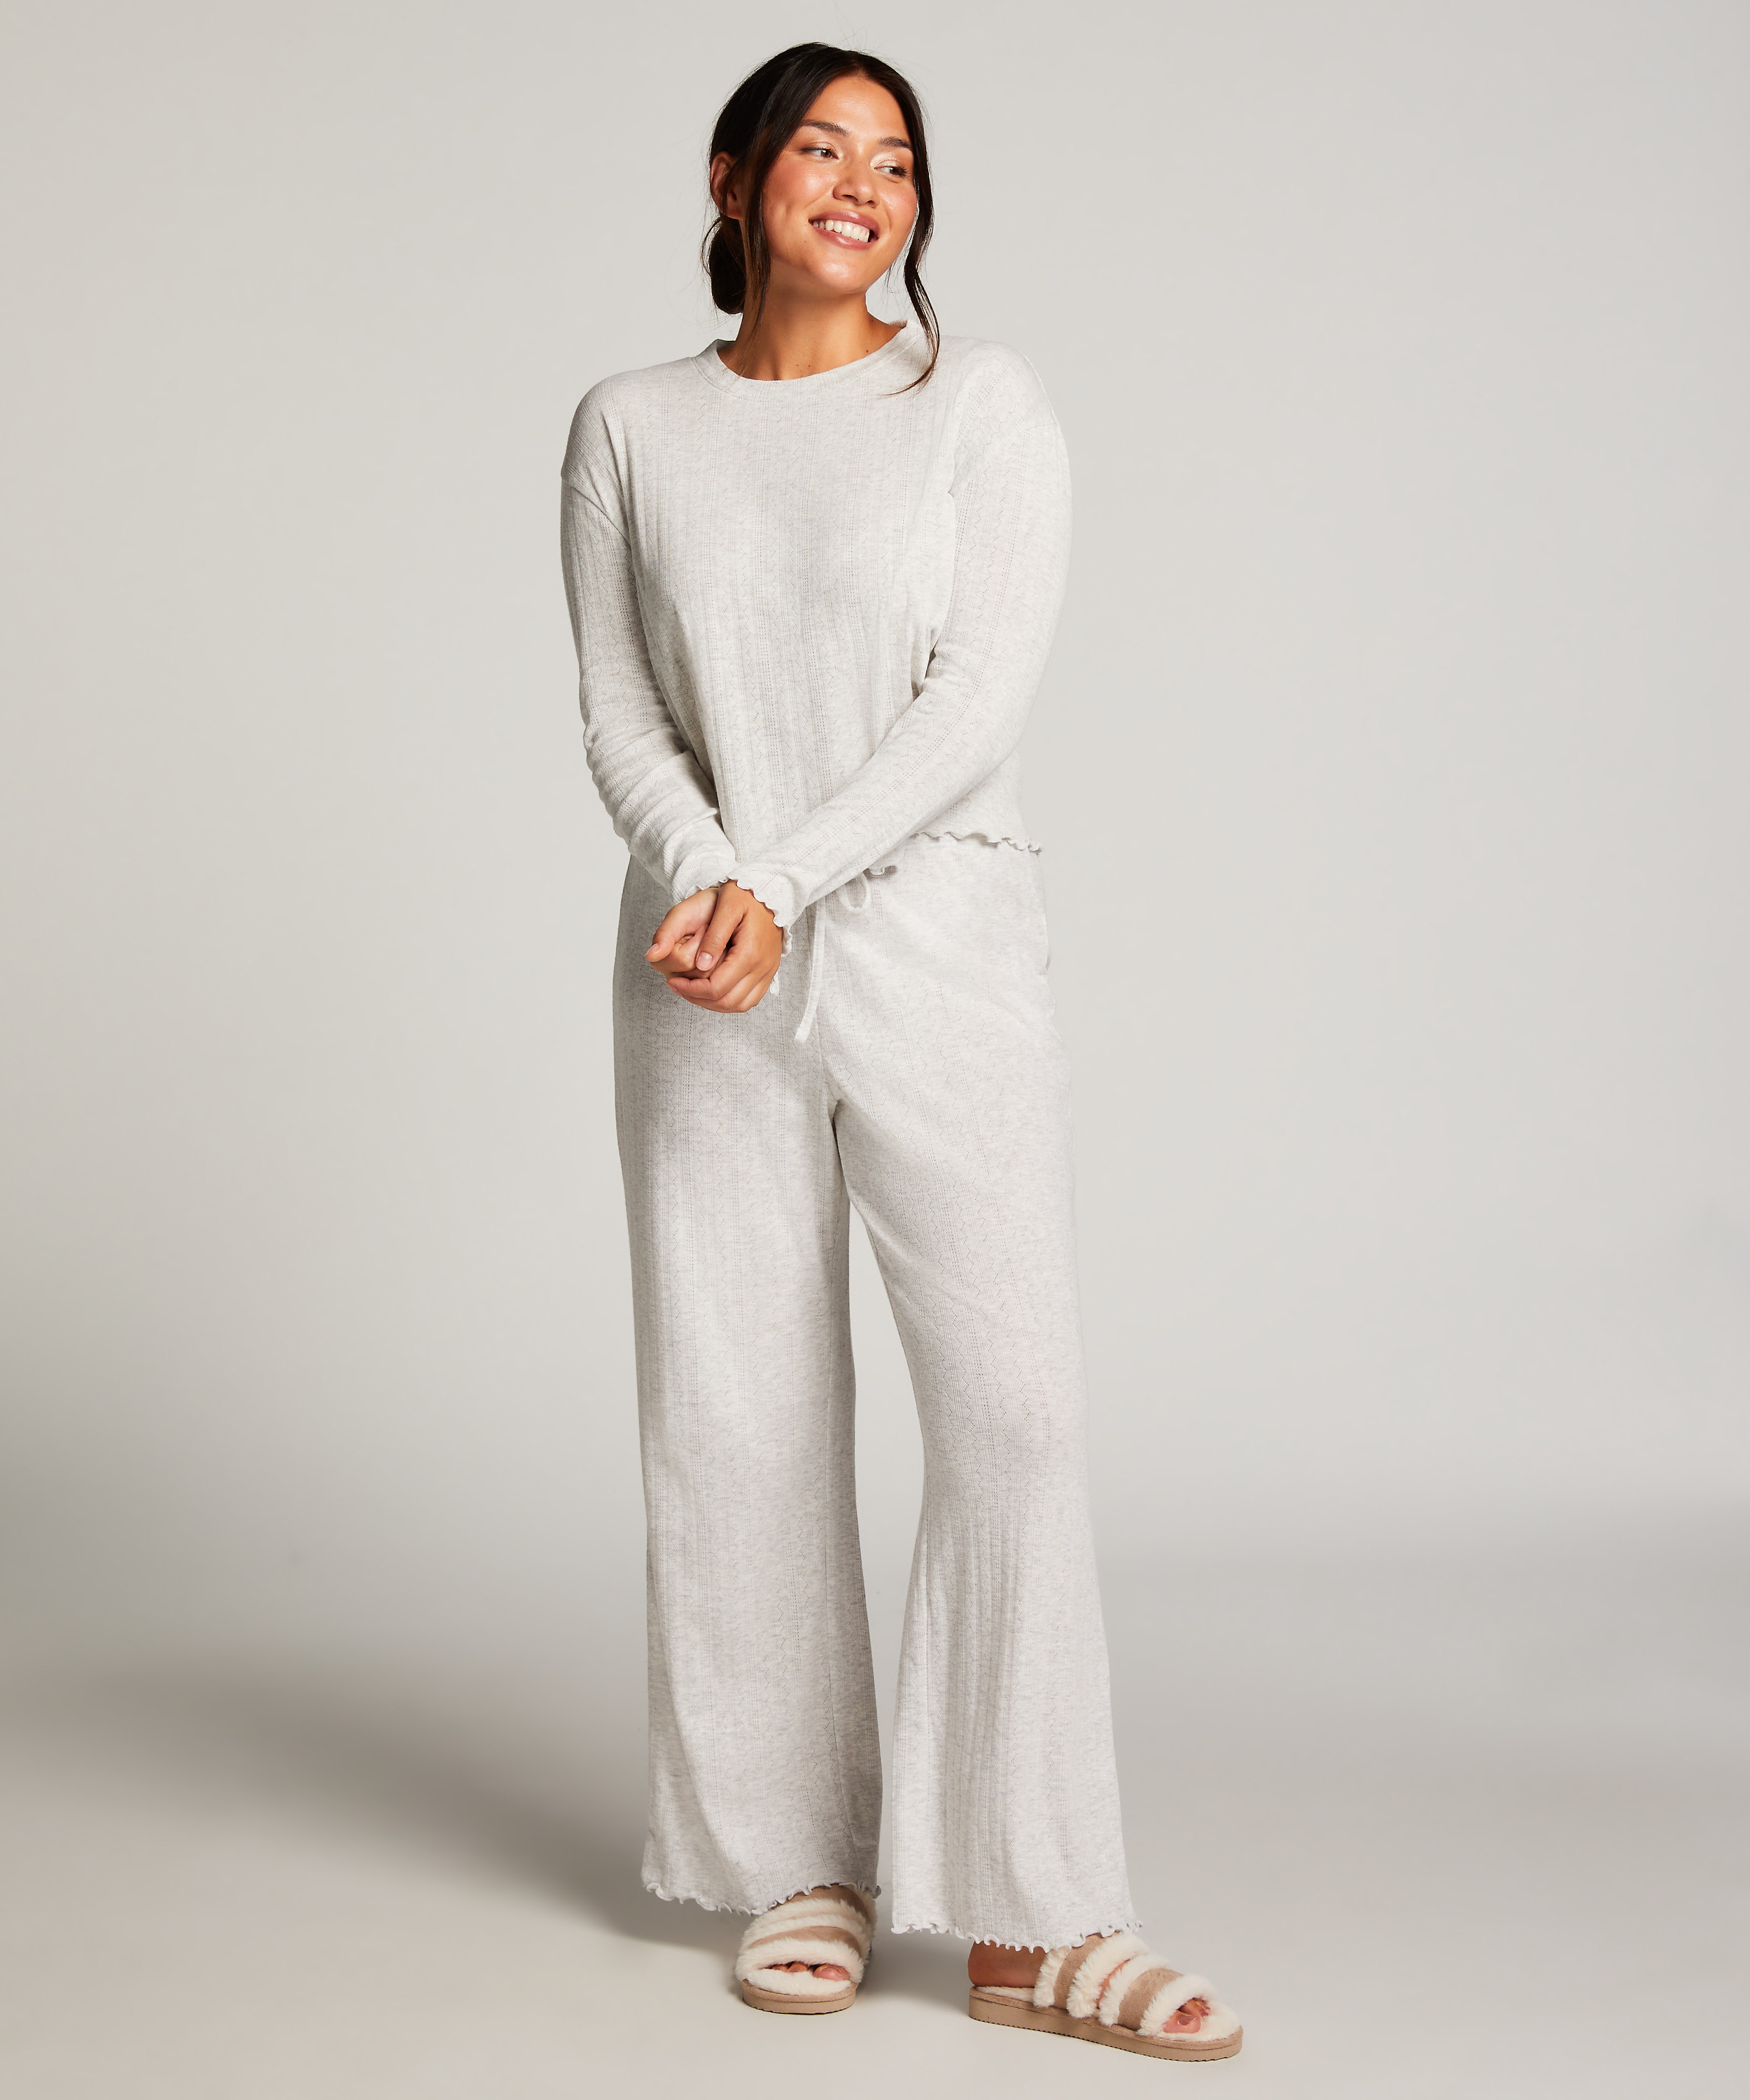 Pointelle Long-Sleeved Pyjama Top, Beige, main